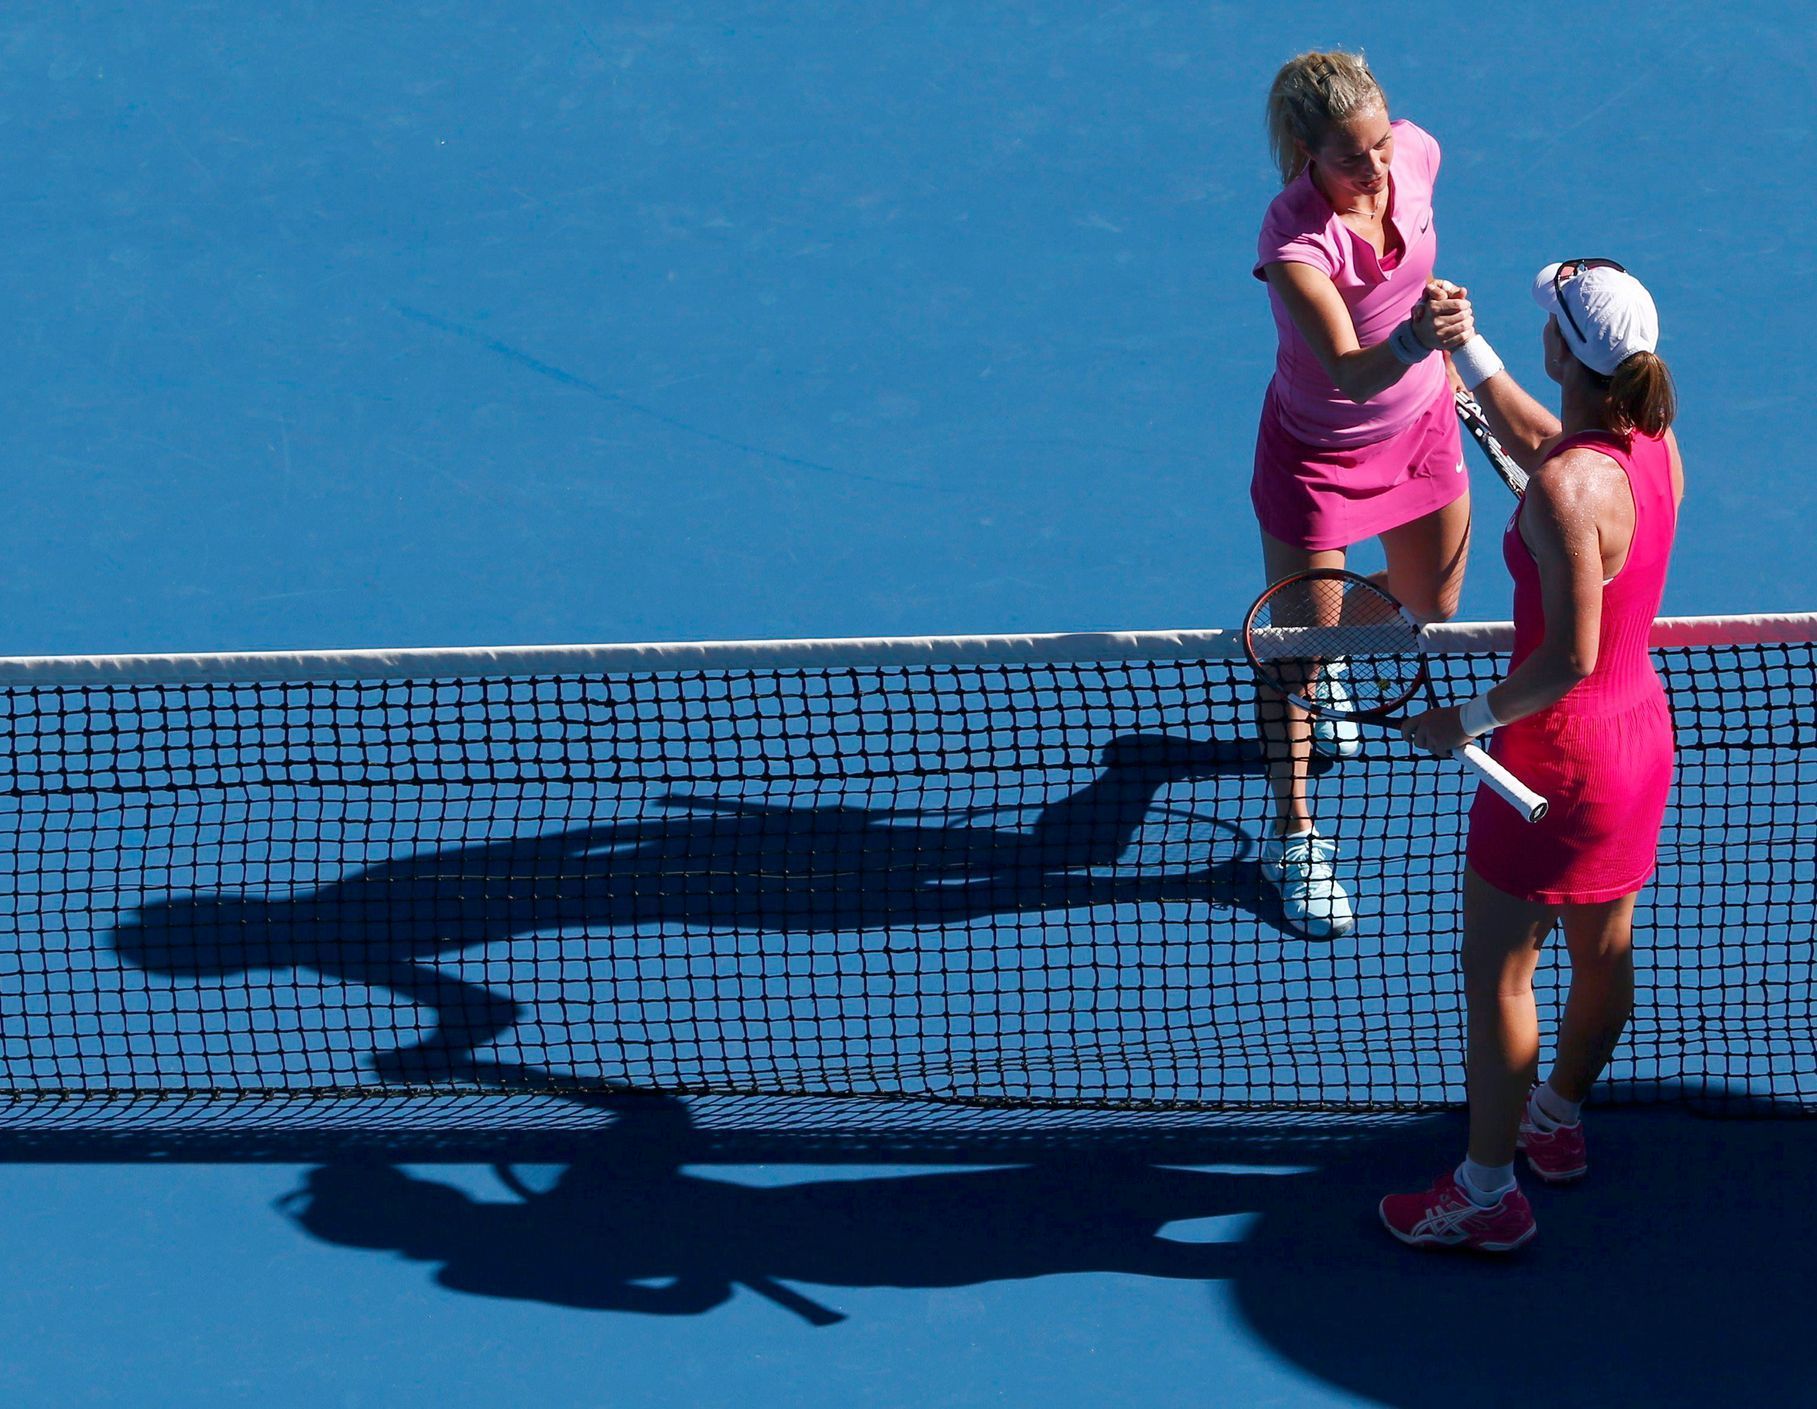 Klára Zakopalová a Samantha Stosurová na Australian Open 2014